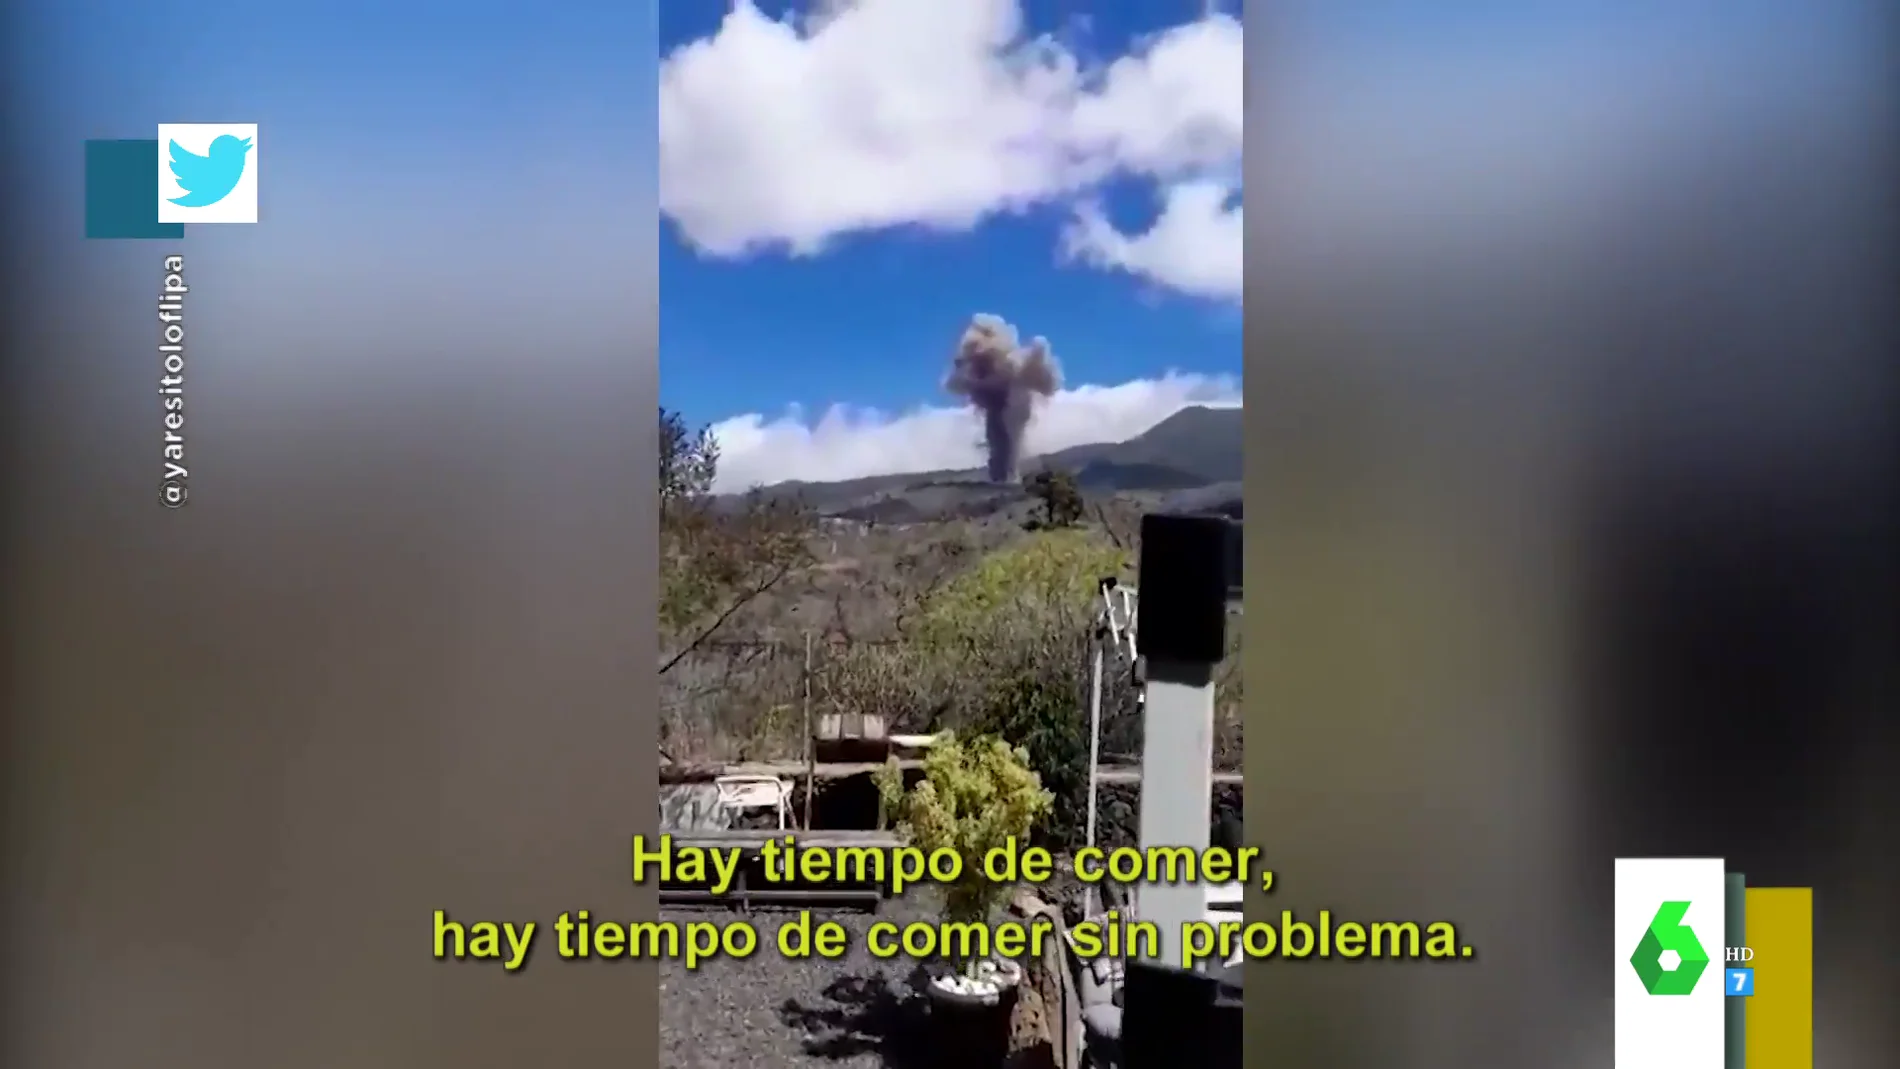 "Hay tiempo de comer sin problemas": los virales de la erupción del volcán en La Palma que arrasan en redes